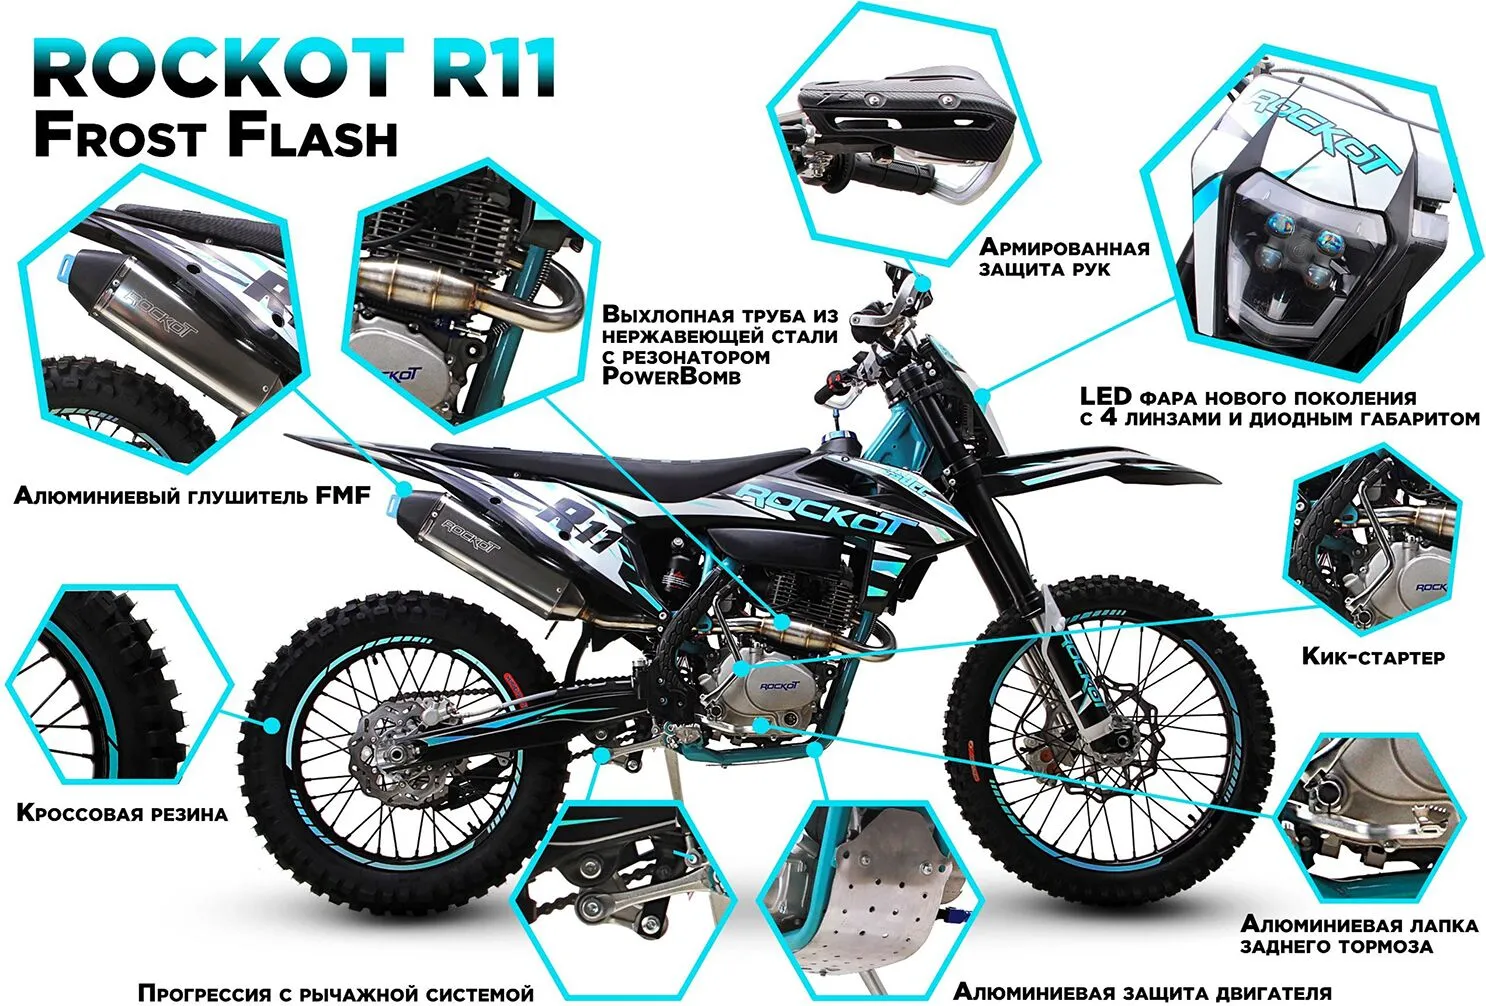 Мотоцикл кроссовый ROCKOT R11 Frost Flash